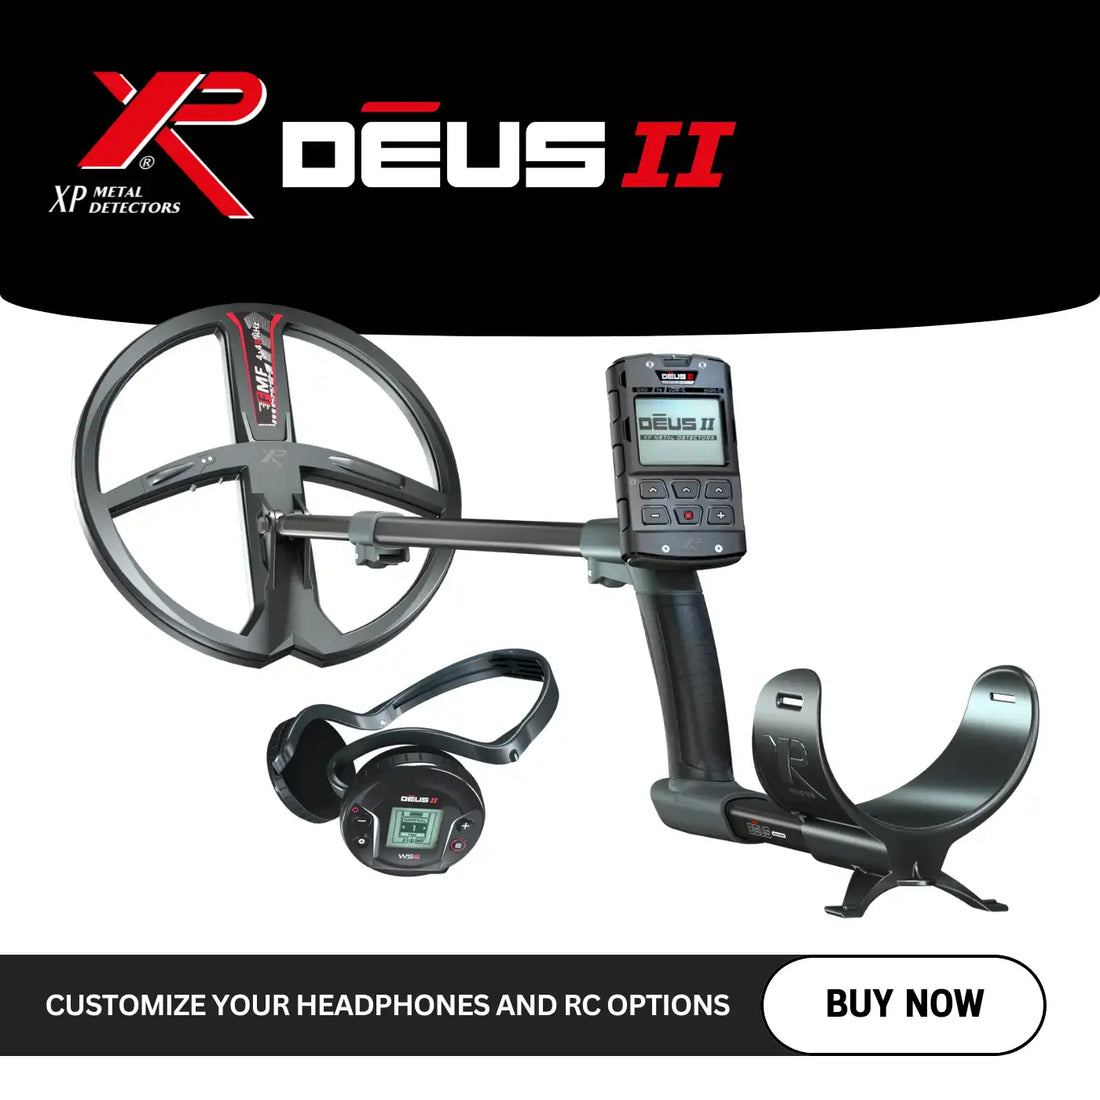 XP Metal Detectors - Deus II Detector with Customizable Headphones, Hobby